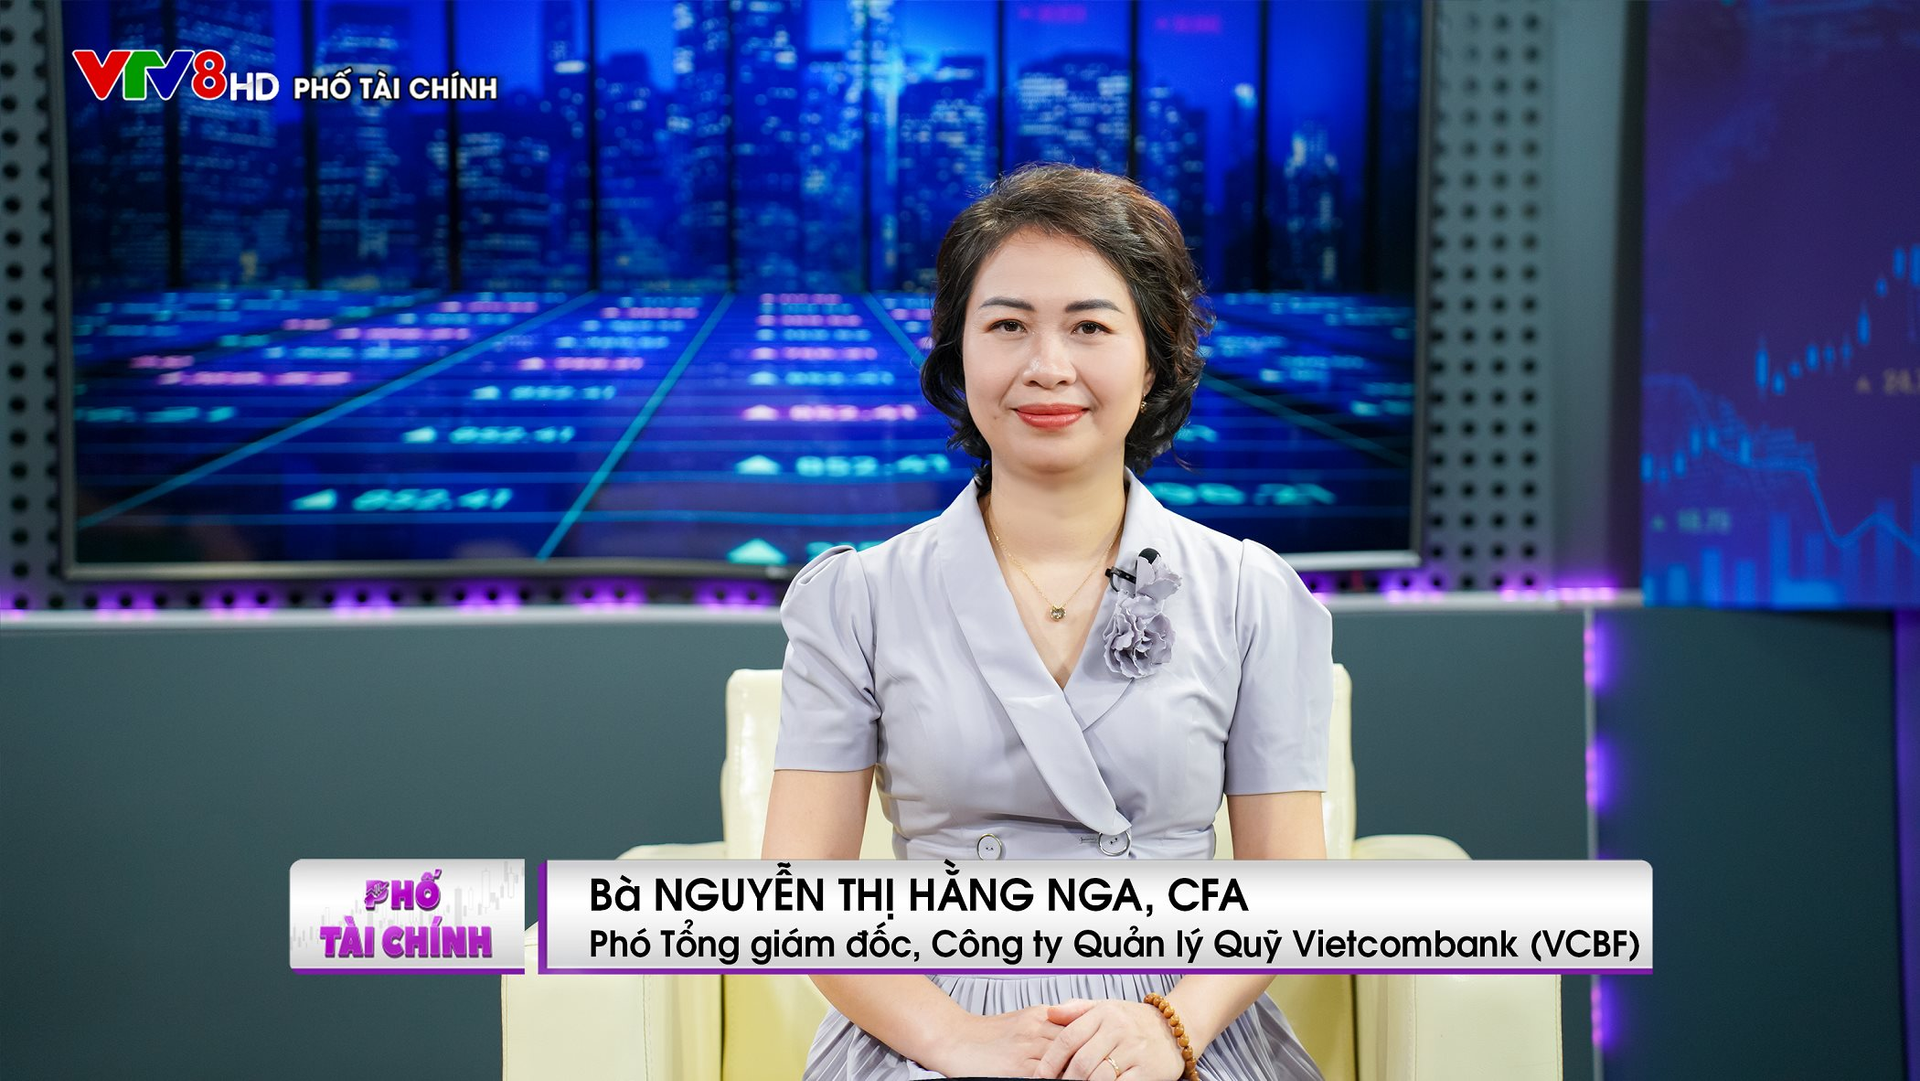 Phó Tổng giám đốc VCBF: Tiềm năng ngành quản lý quỹ ở Việt Nam còn rất lớn. - Ảnh 1.